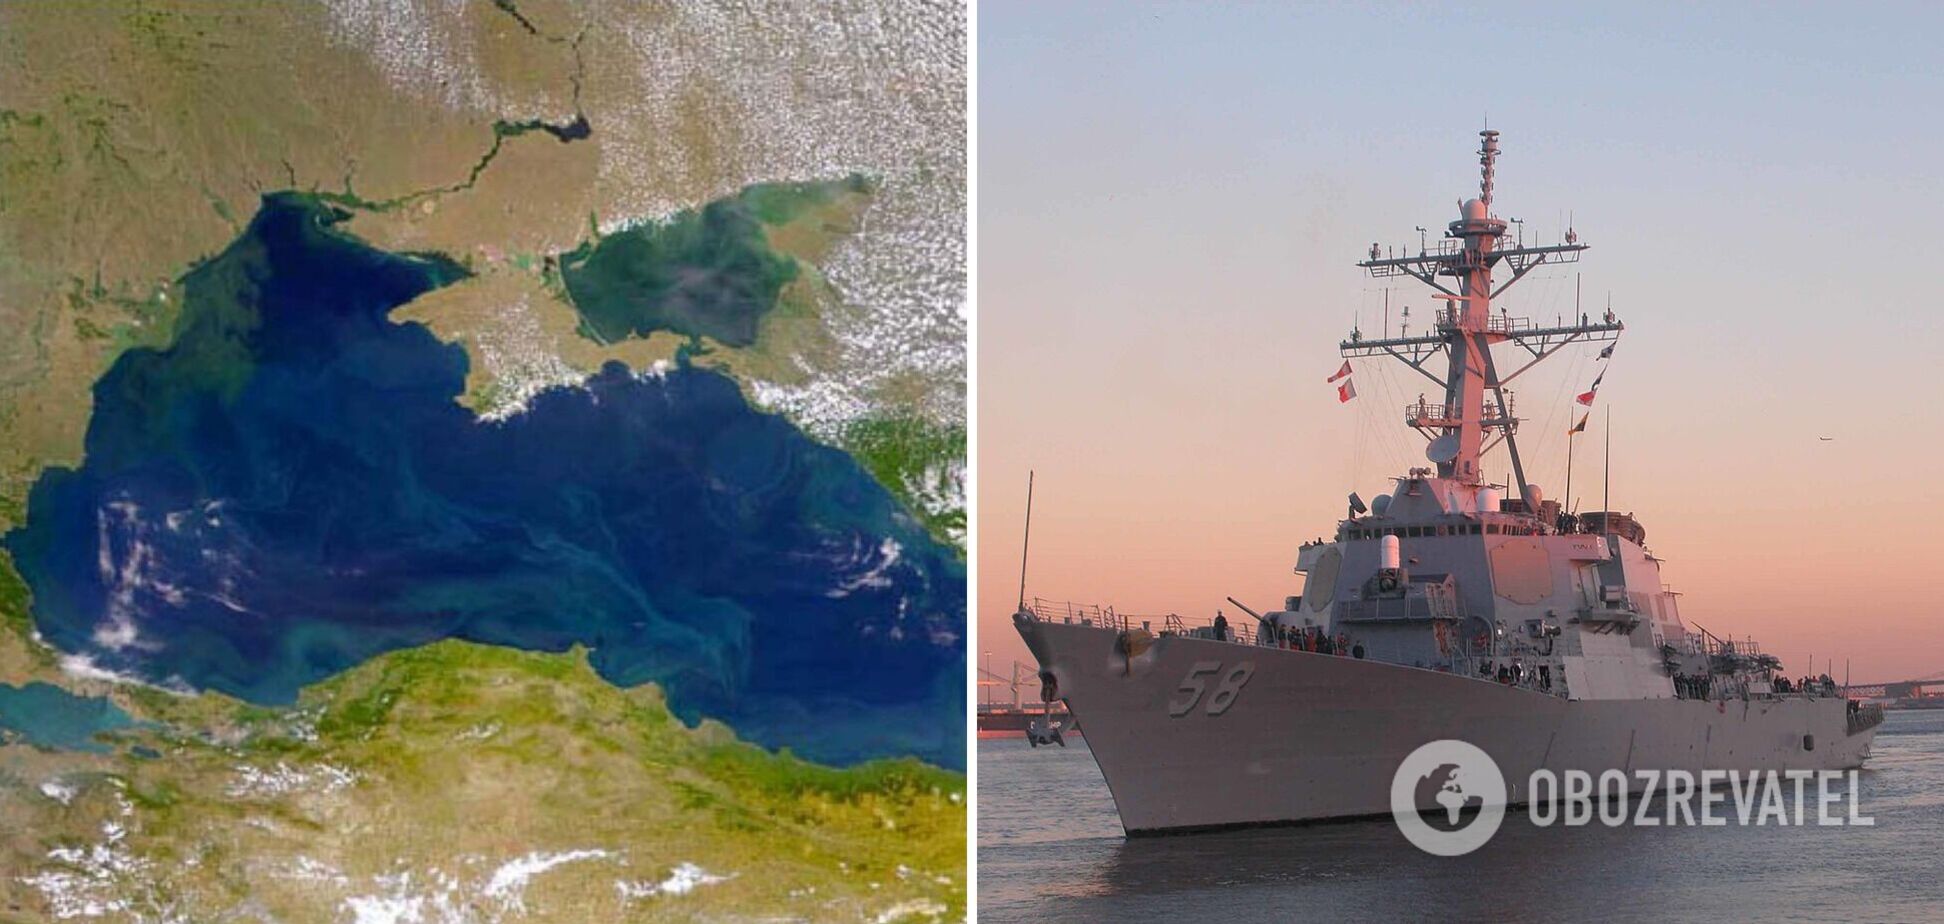 USS Laboon візьме участь в операціях із морської безпеки в регіоні